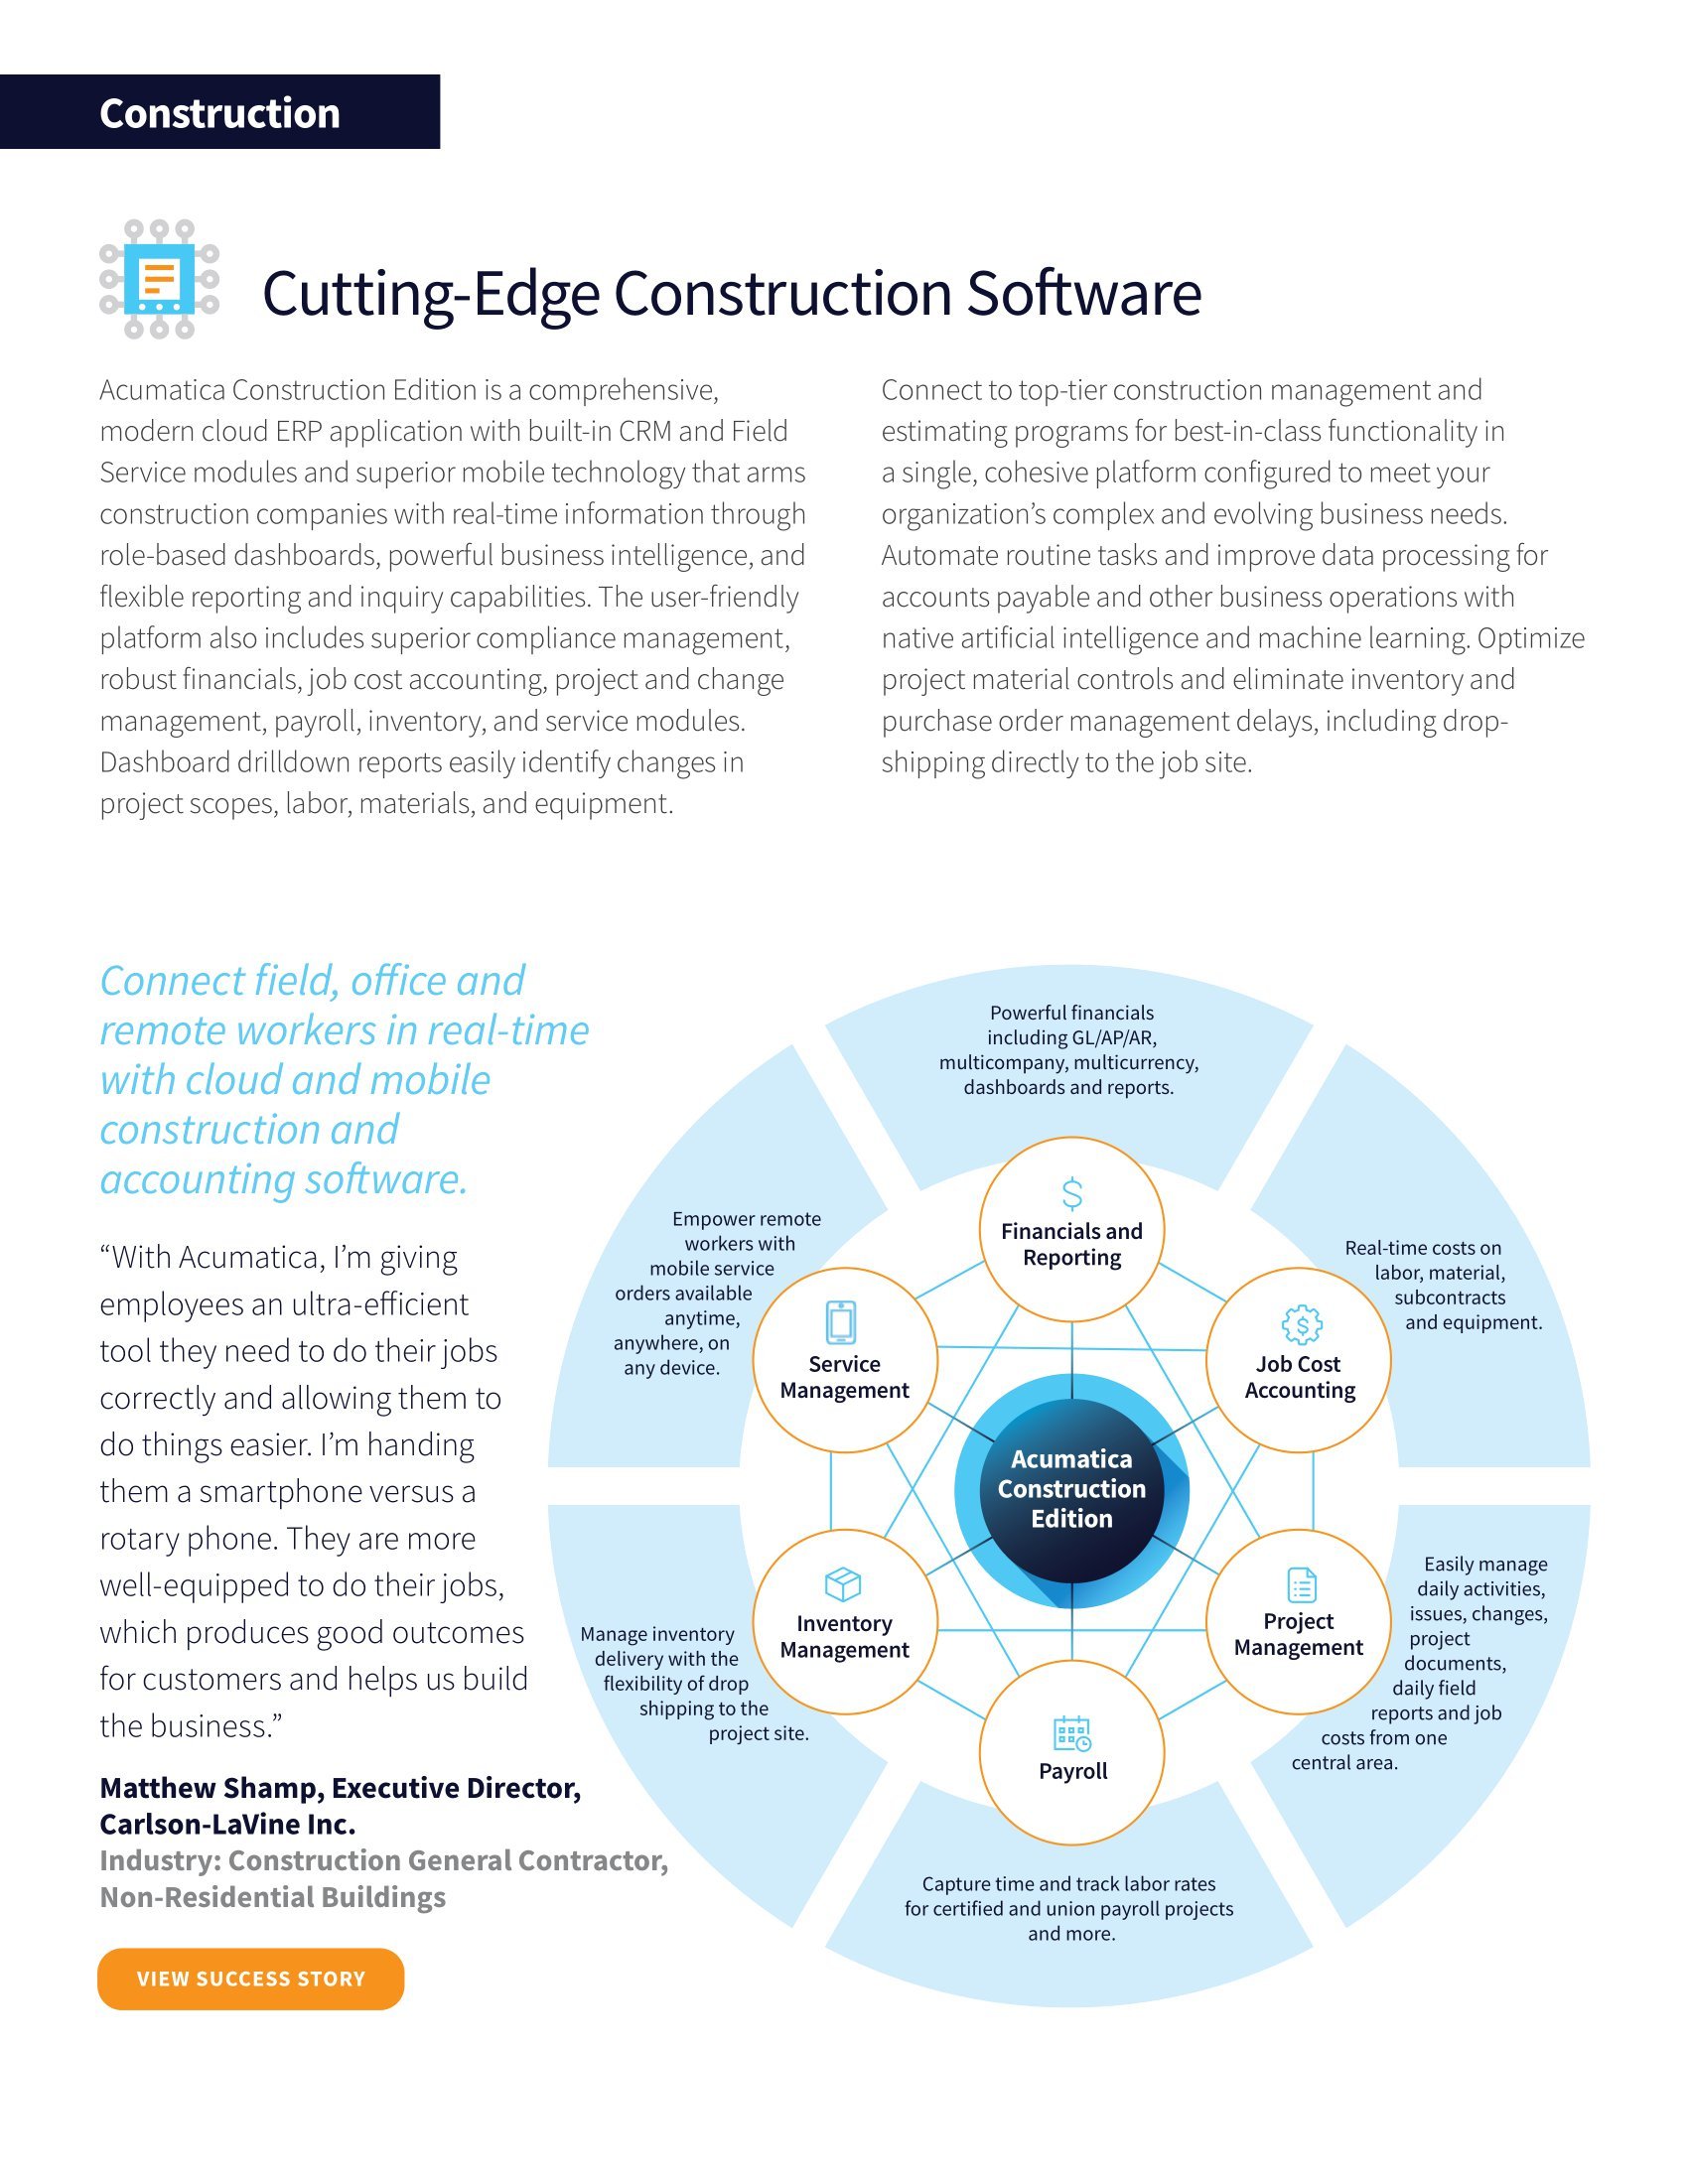 Acumatica Construction Edition:  Una solución ERP completa para satisfacer todas sus necesidades, página 1